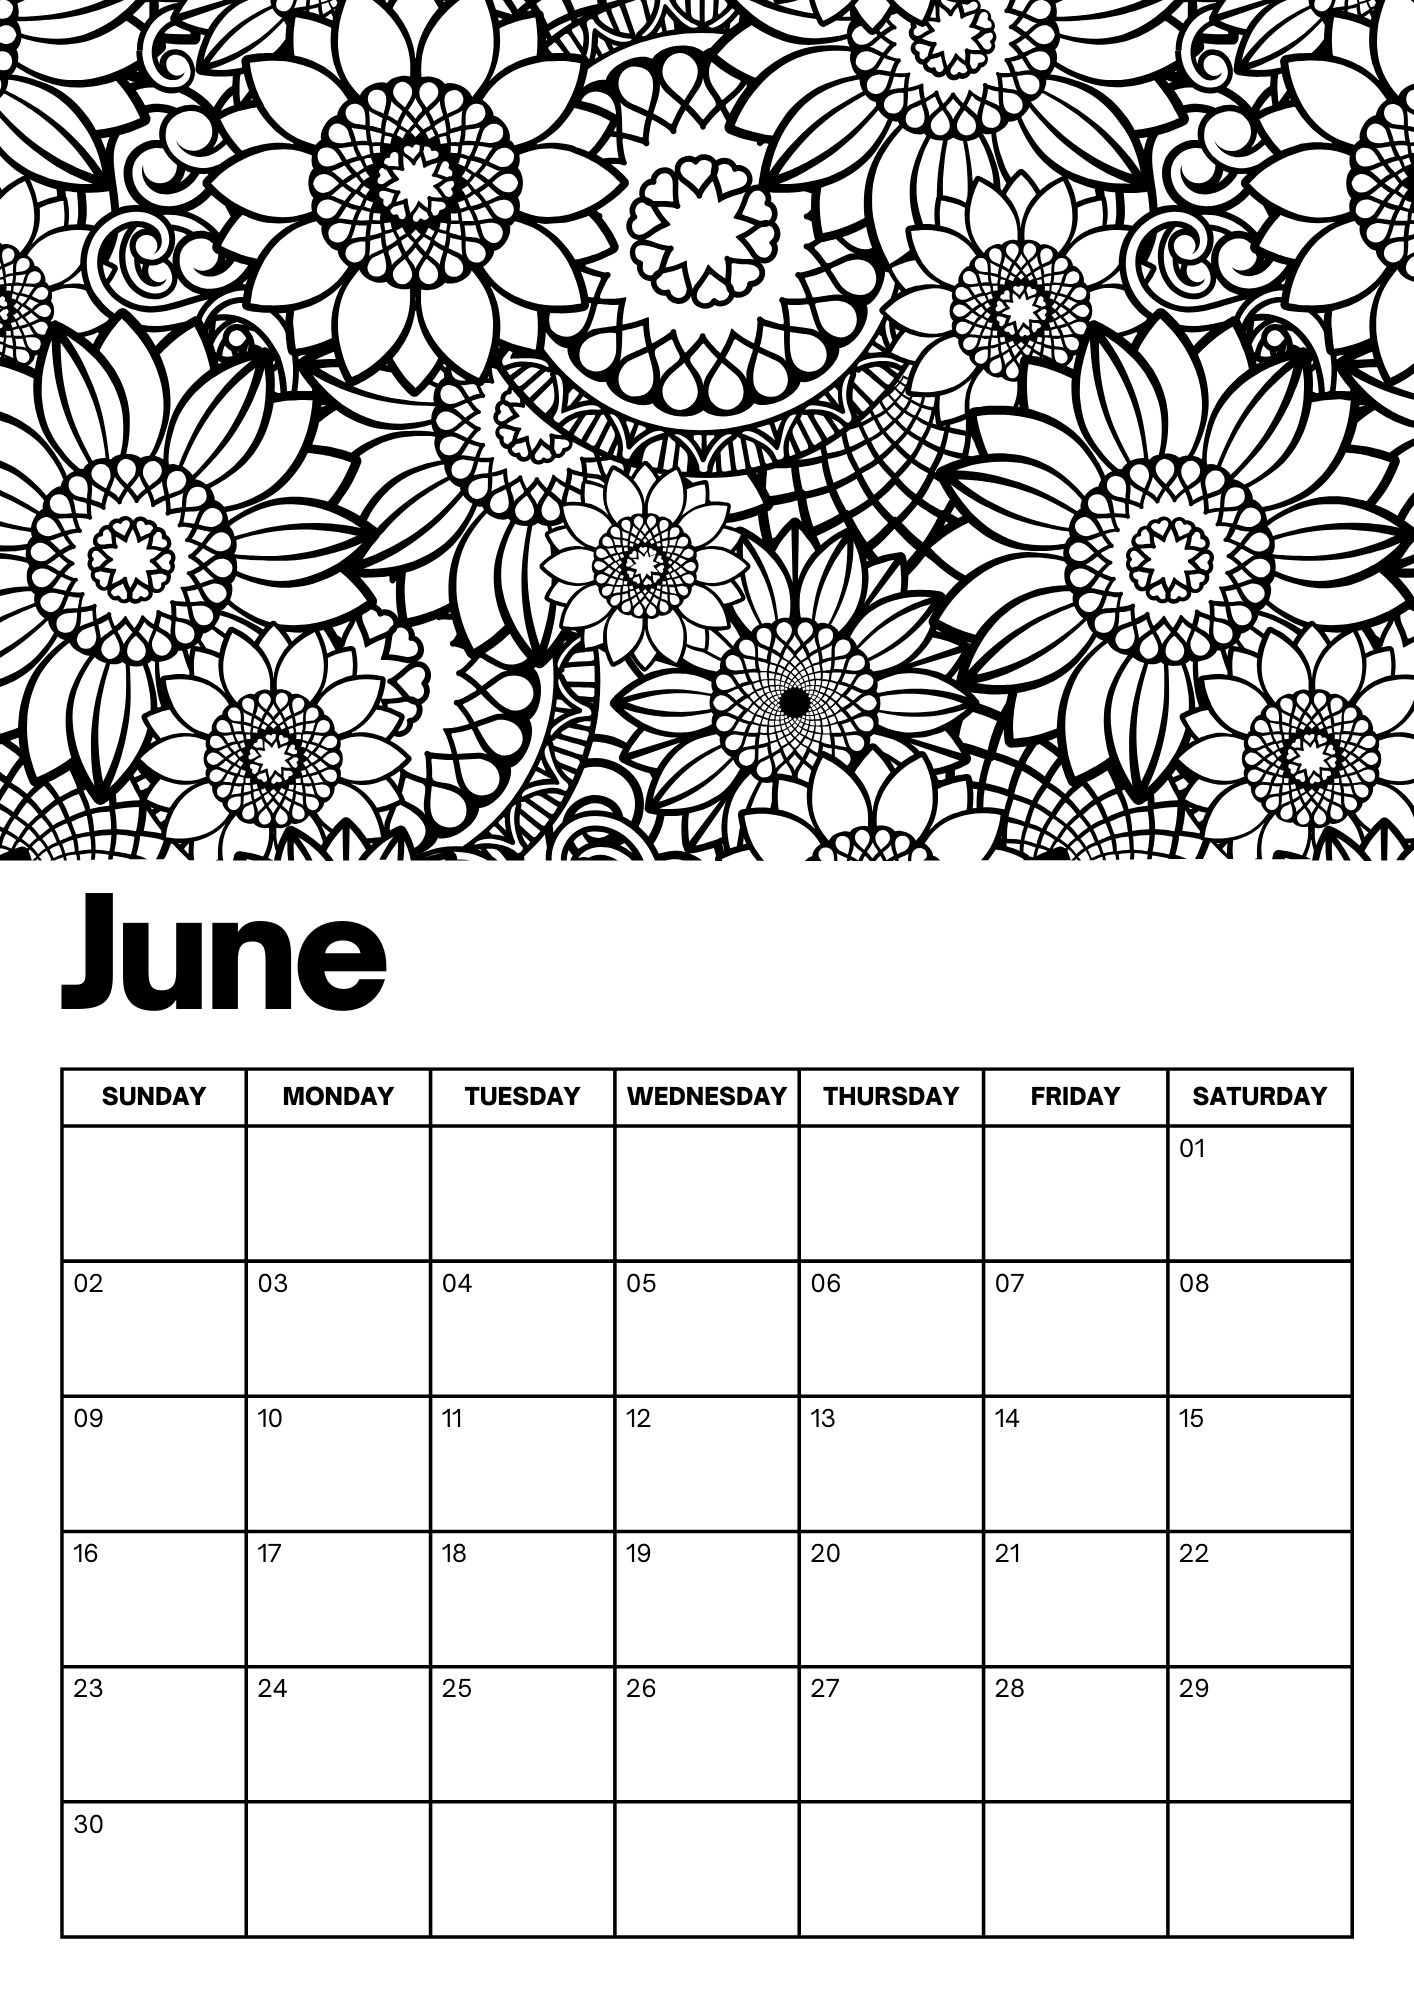 June Calendars - 100% FREE PRINTABLES